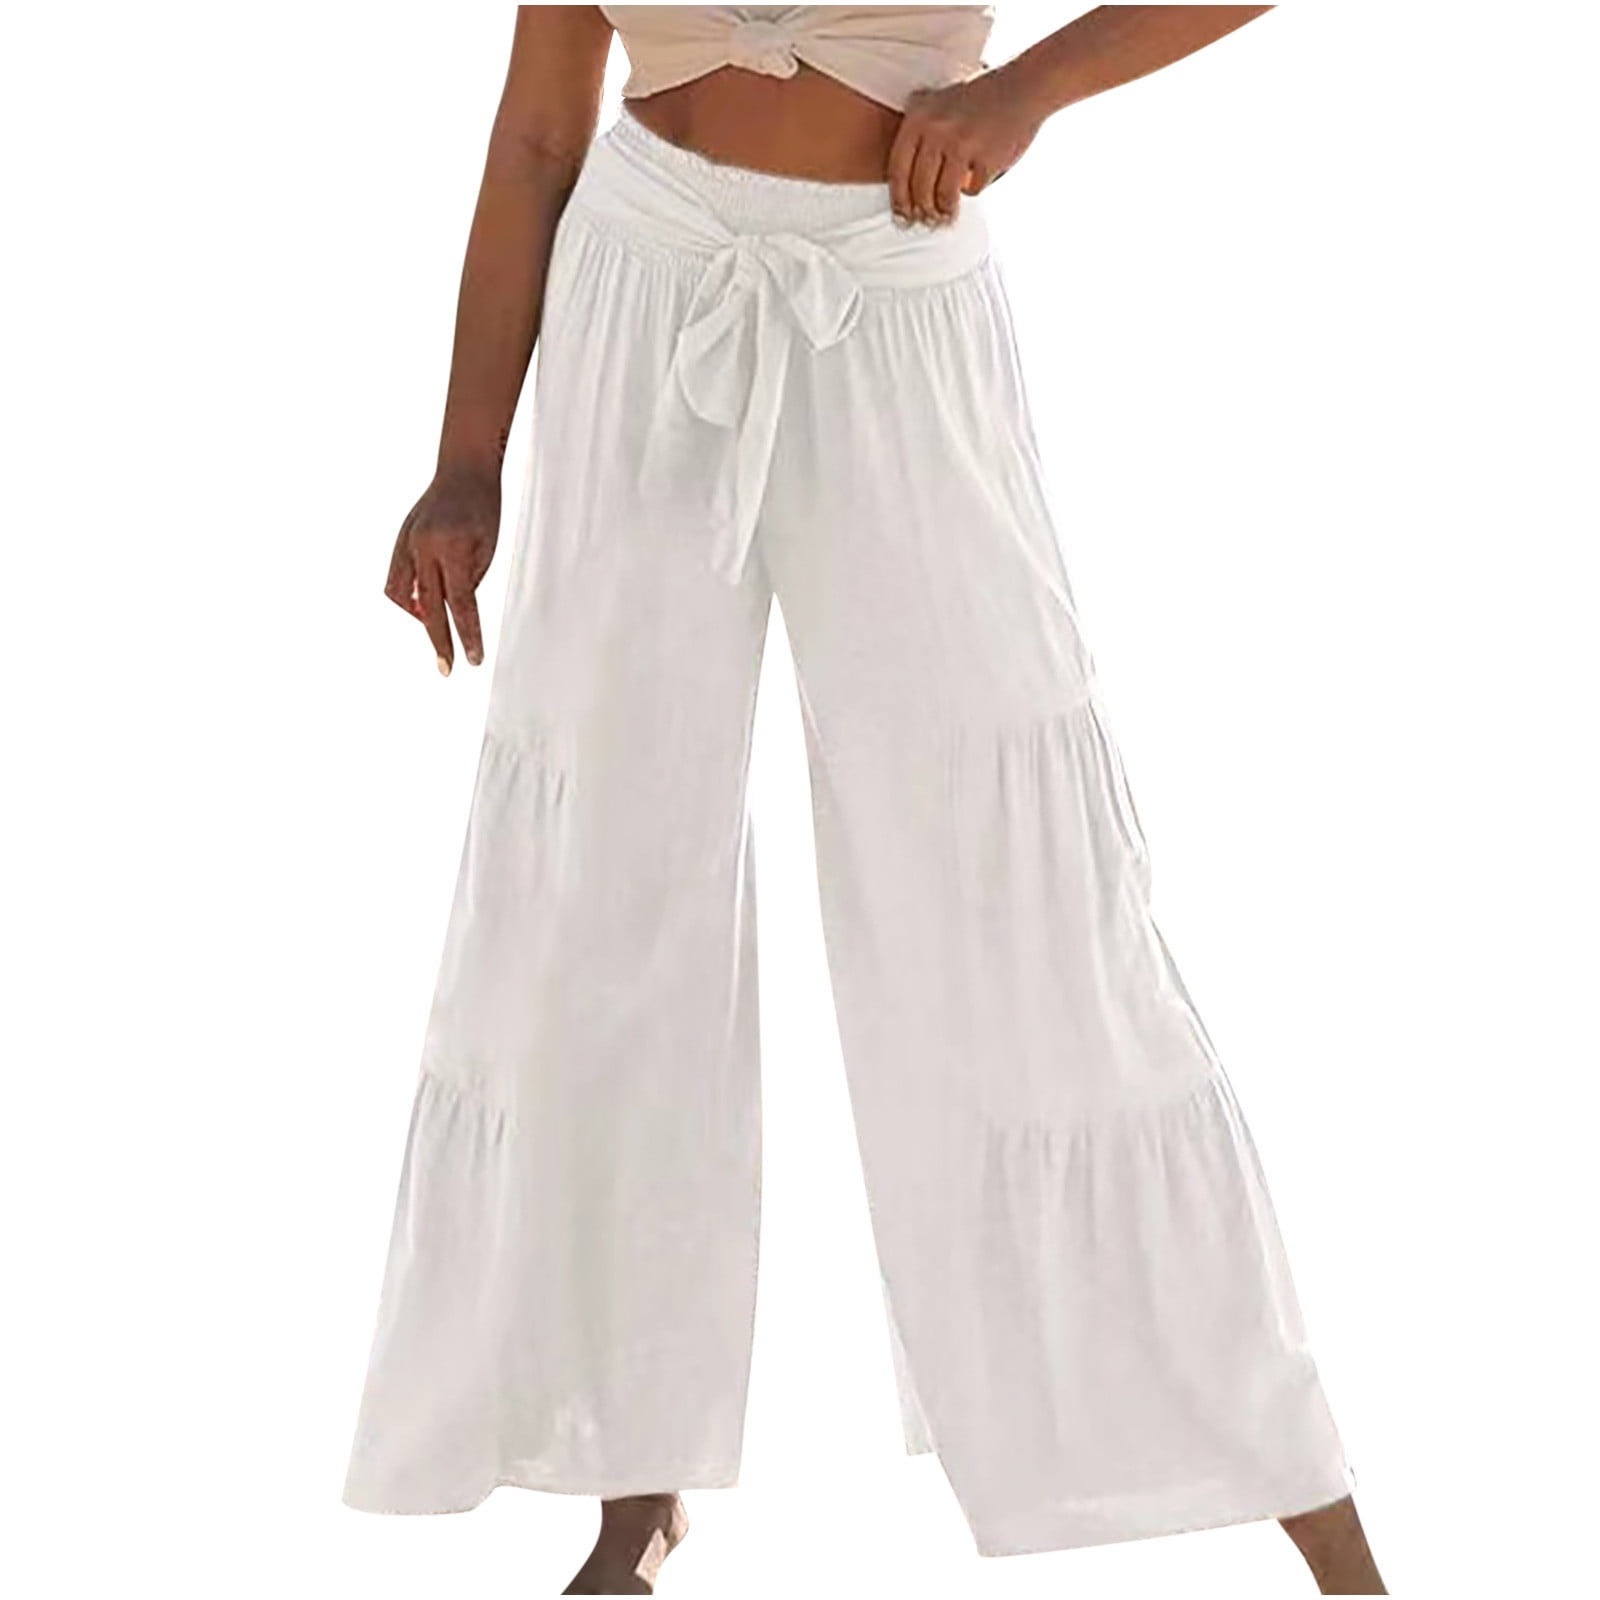 Women's Wide Leg Pants Solid Belted High Waist Cotton Linen